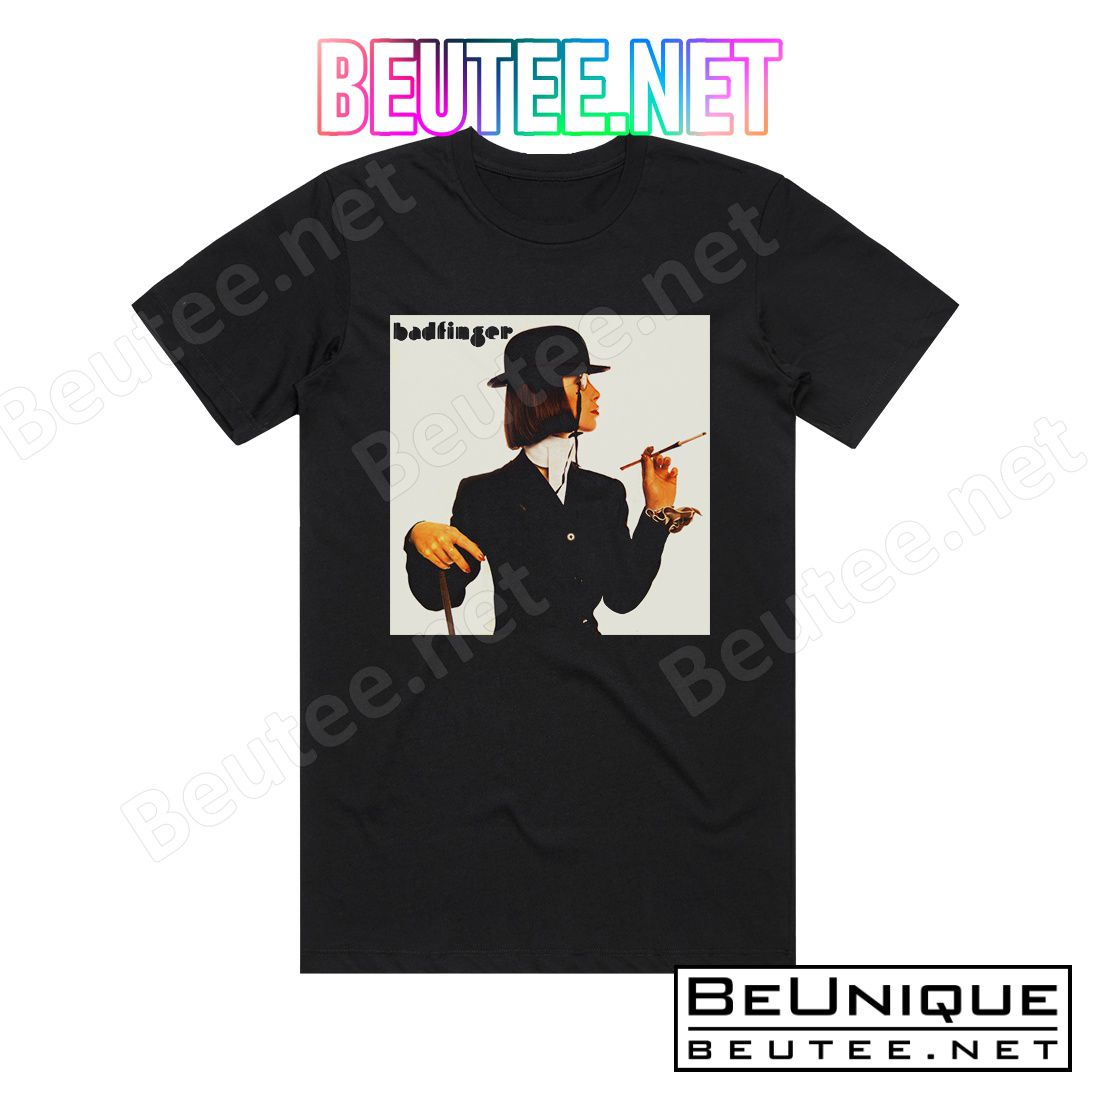 Badfinger Badfinger Album Cover T-Shirt